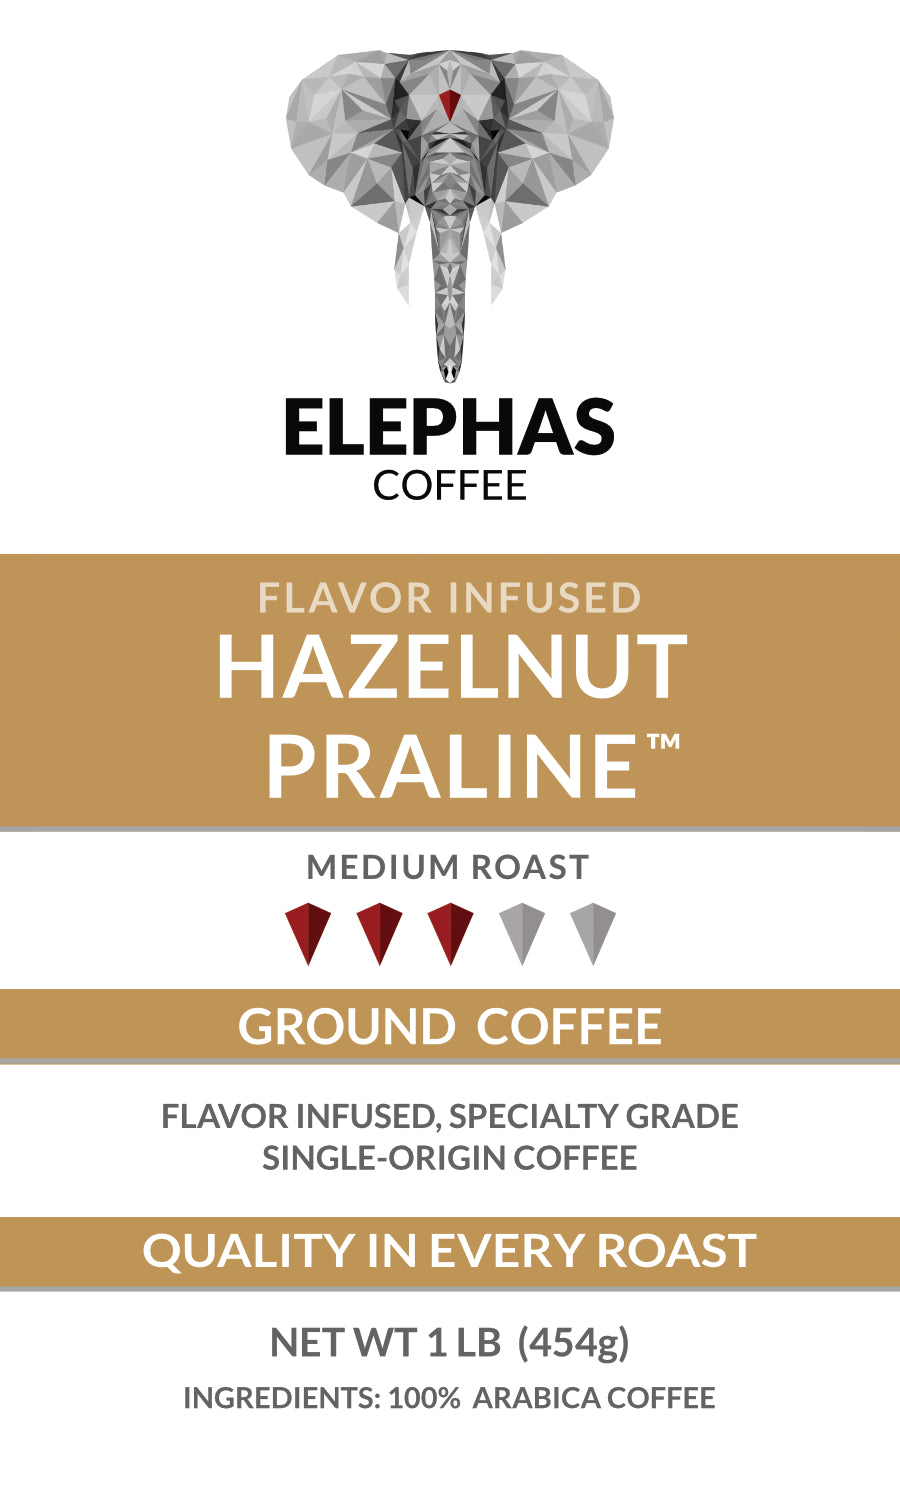 Hazelnut Praline - Flavor infused Specialty Coffee from Elephas Coffee